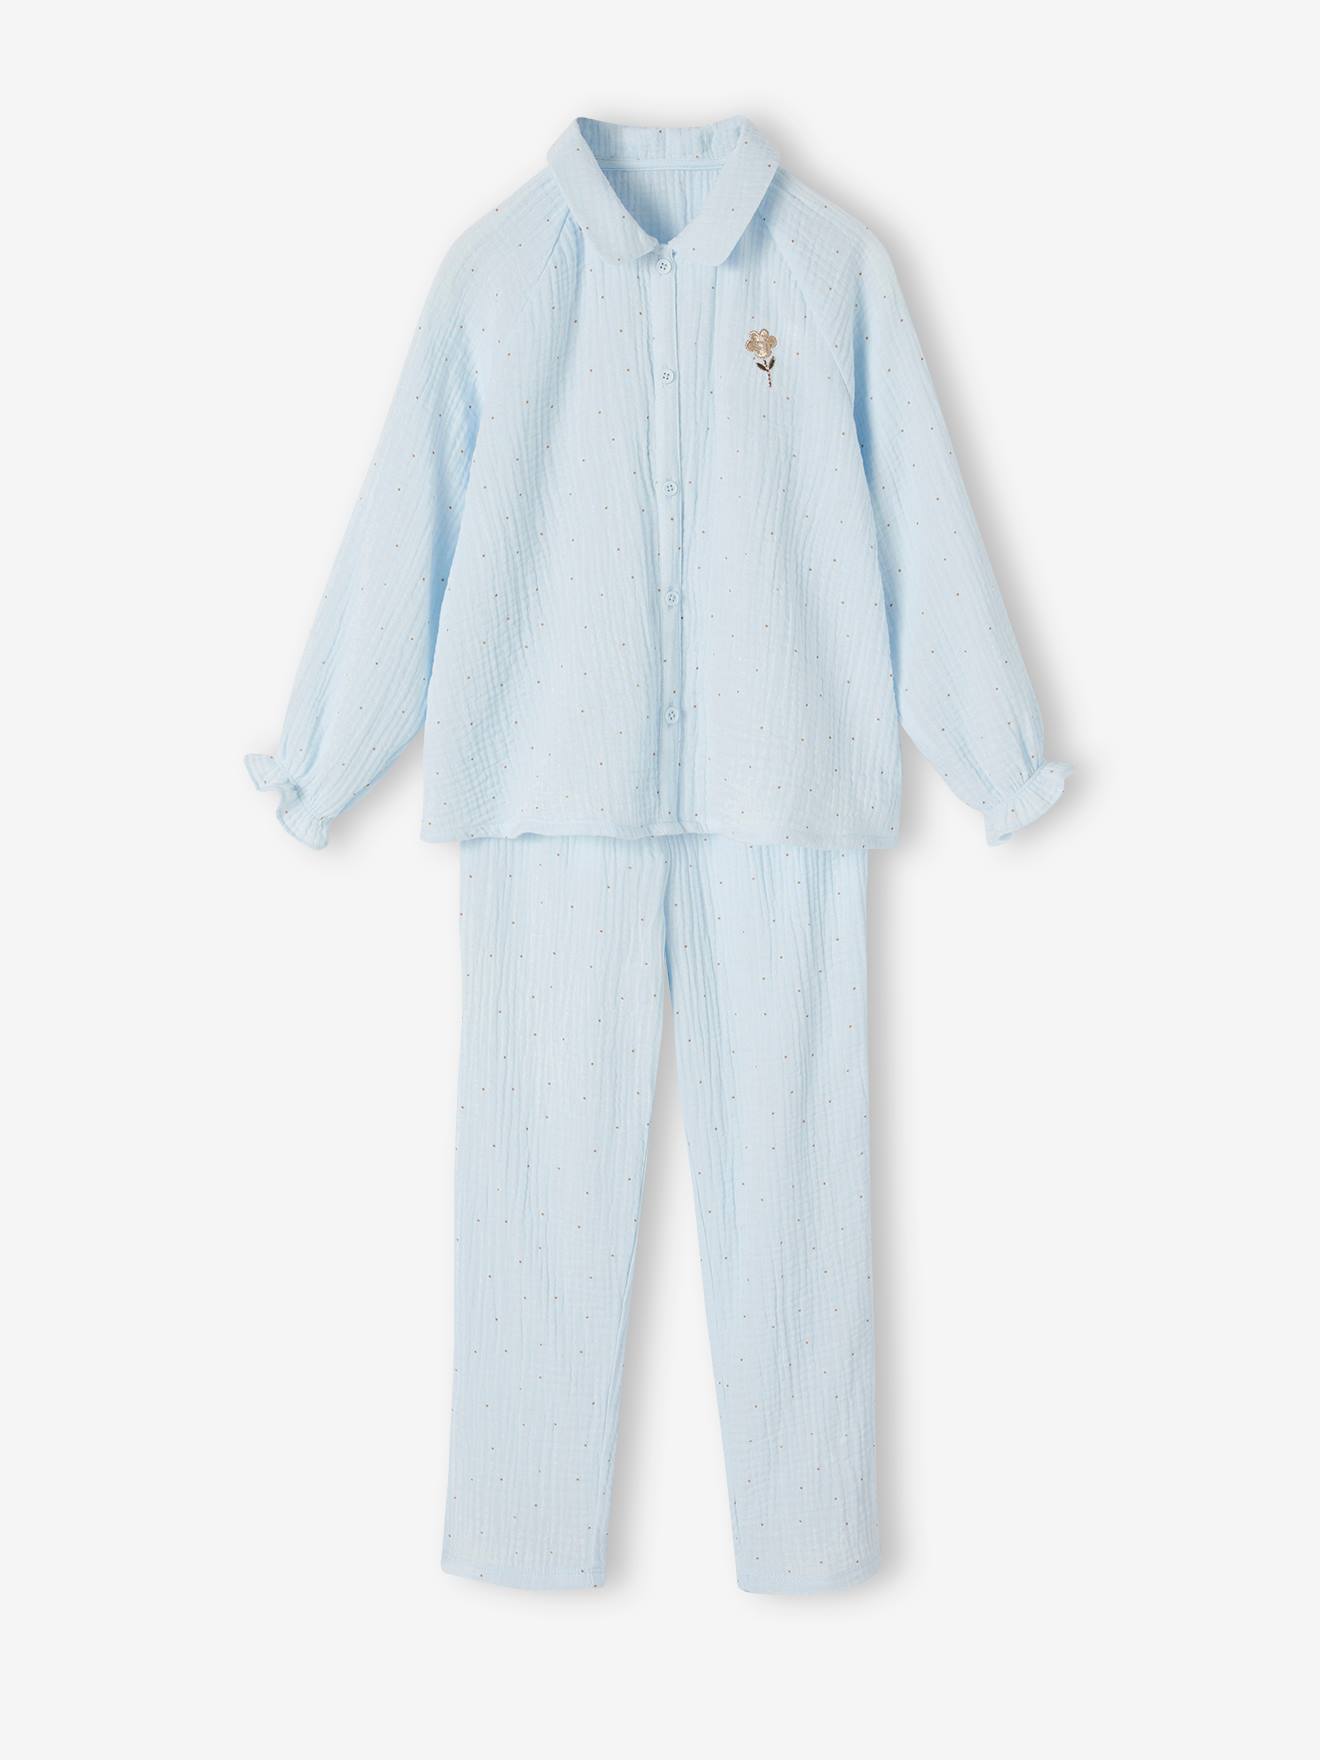 Pyjamatopje voor meisjes met sprankelende stippenprint hemelsblauw